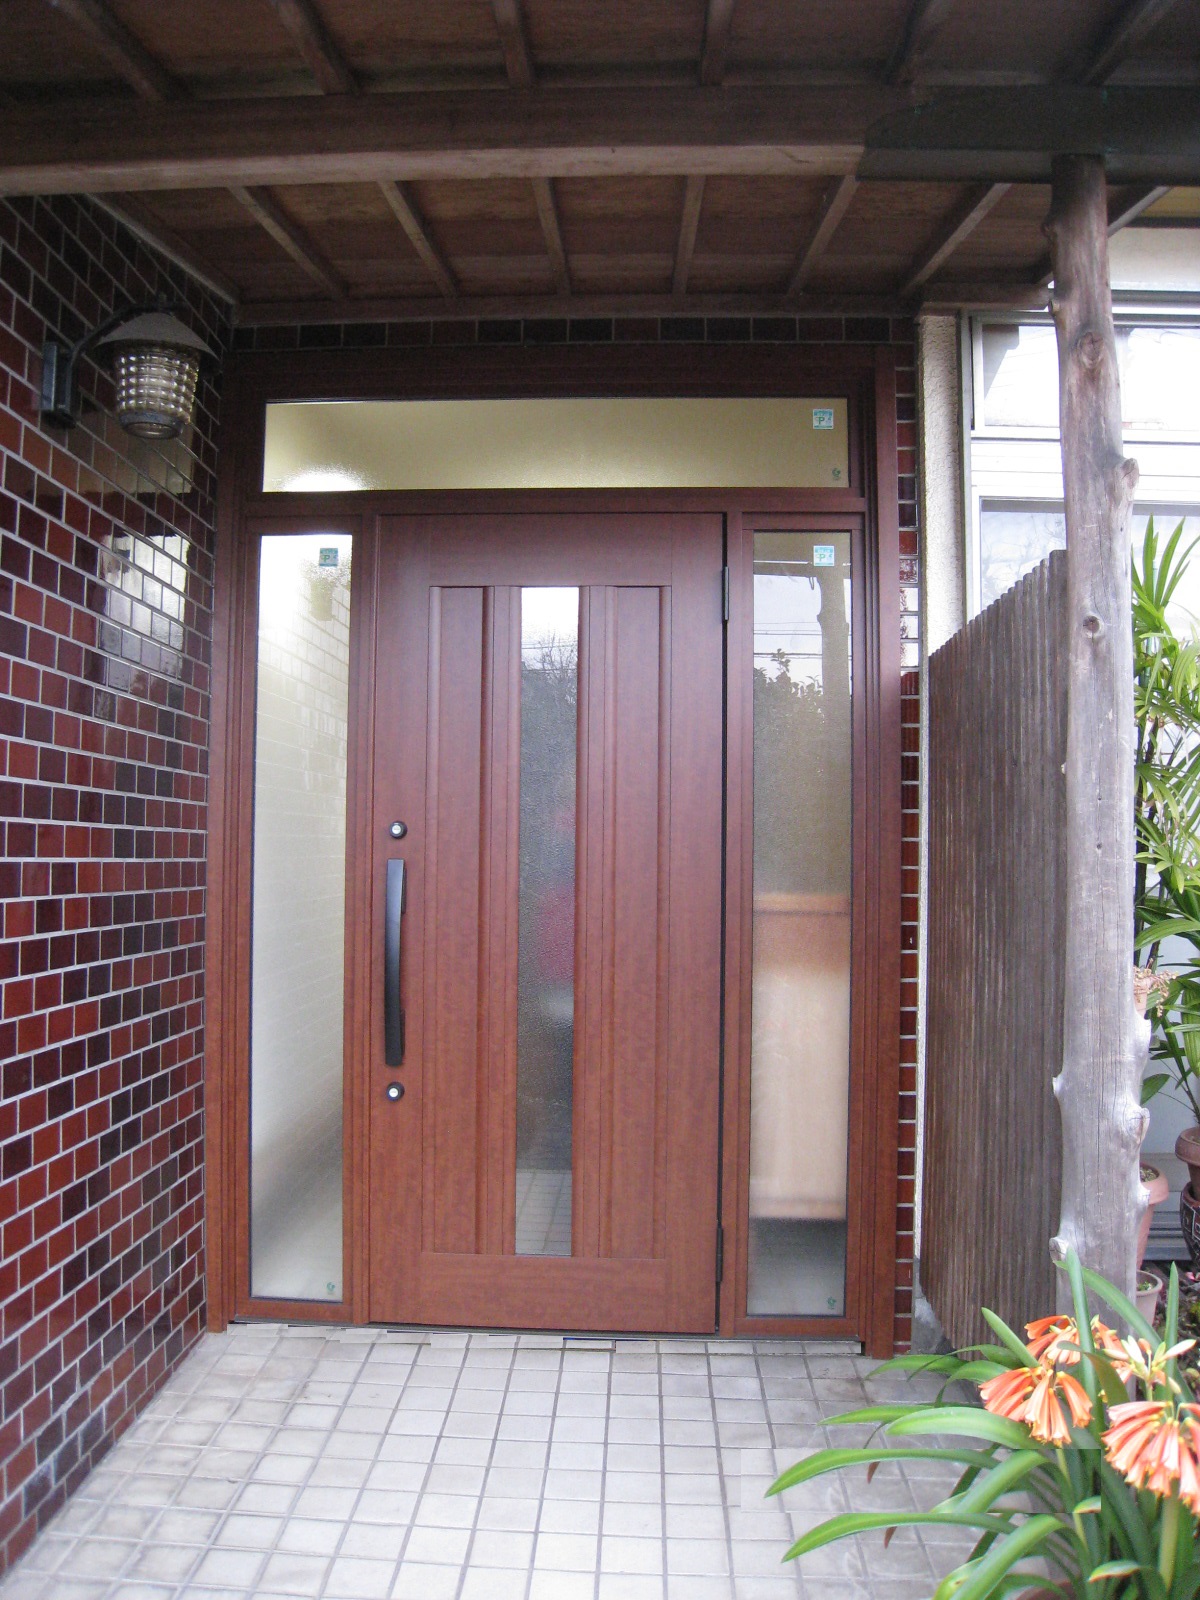 姫路市M様邸 玄関ドア交換完成しました。 姫路市のリフォーム会社 モリシタ・アット・リフォーム